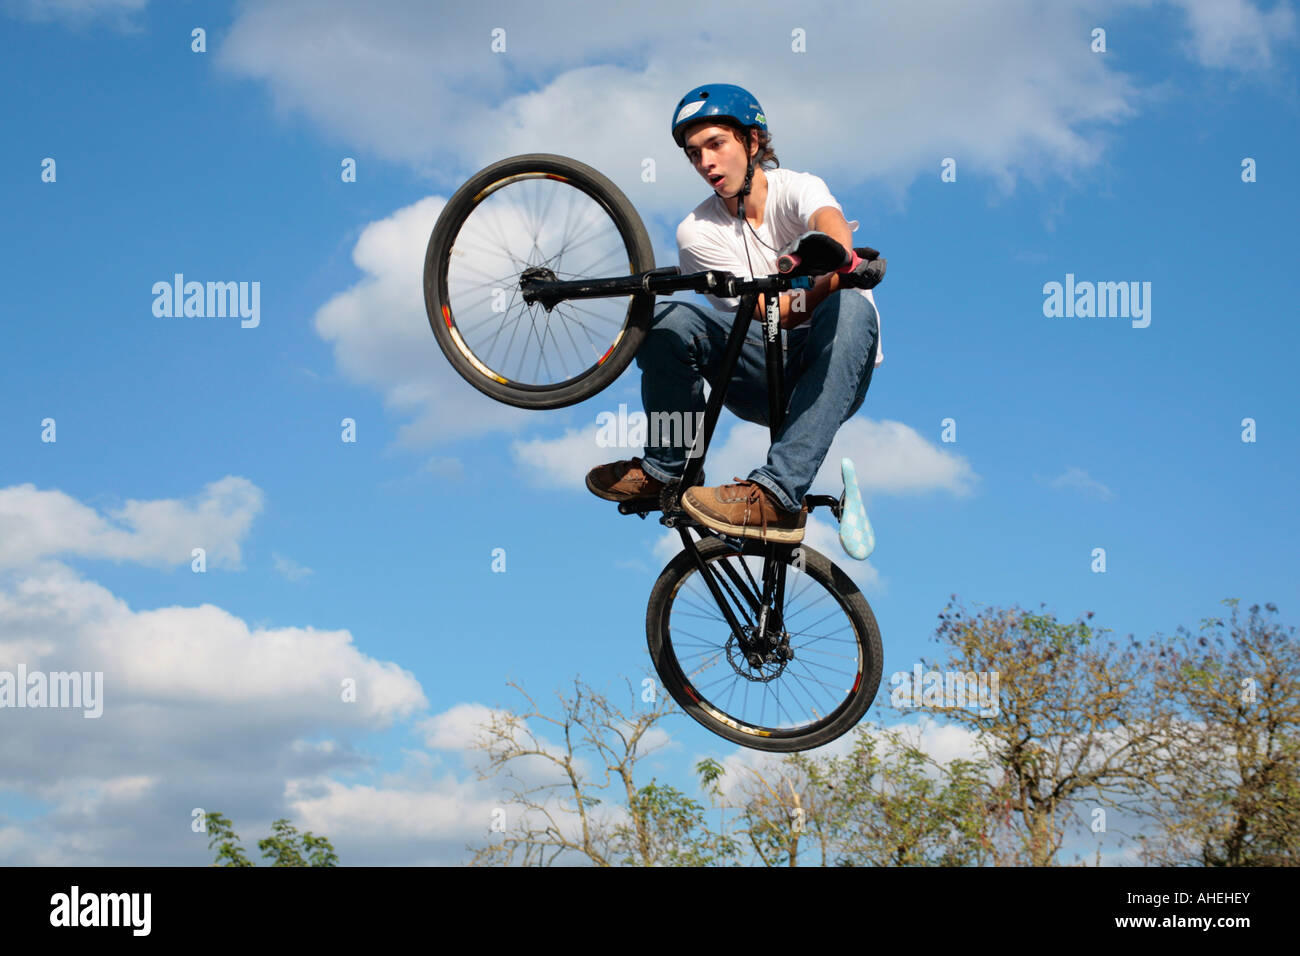 Une adolescente biker jumping avec son vélo Banque D'Images